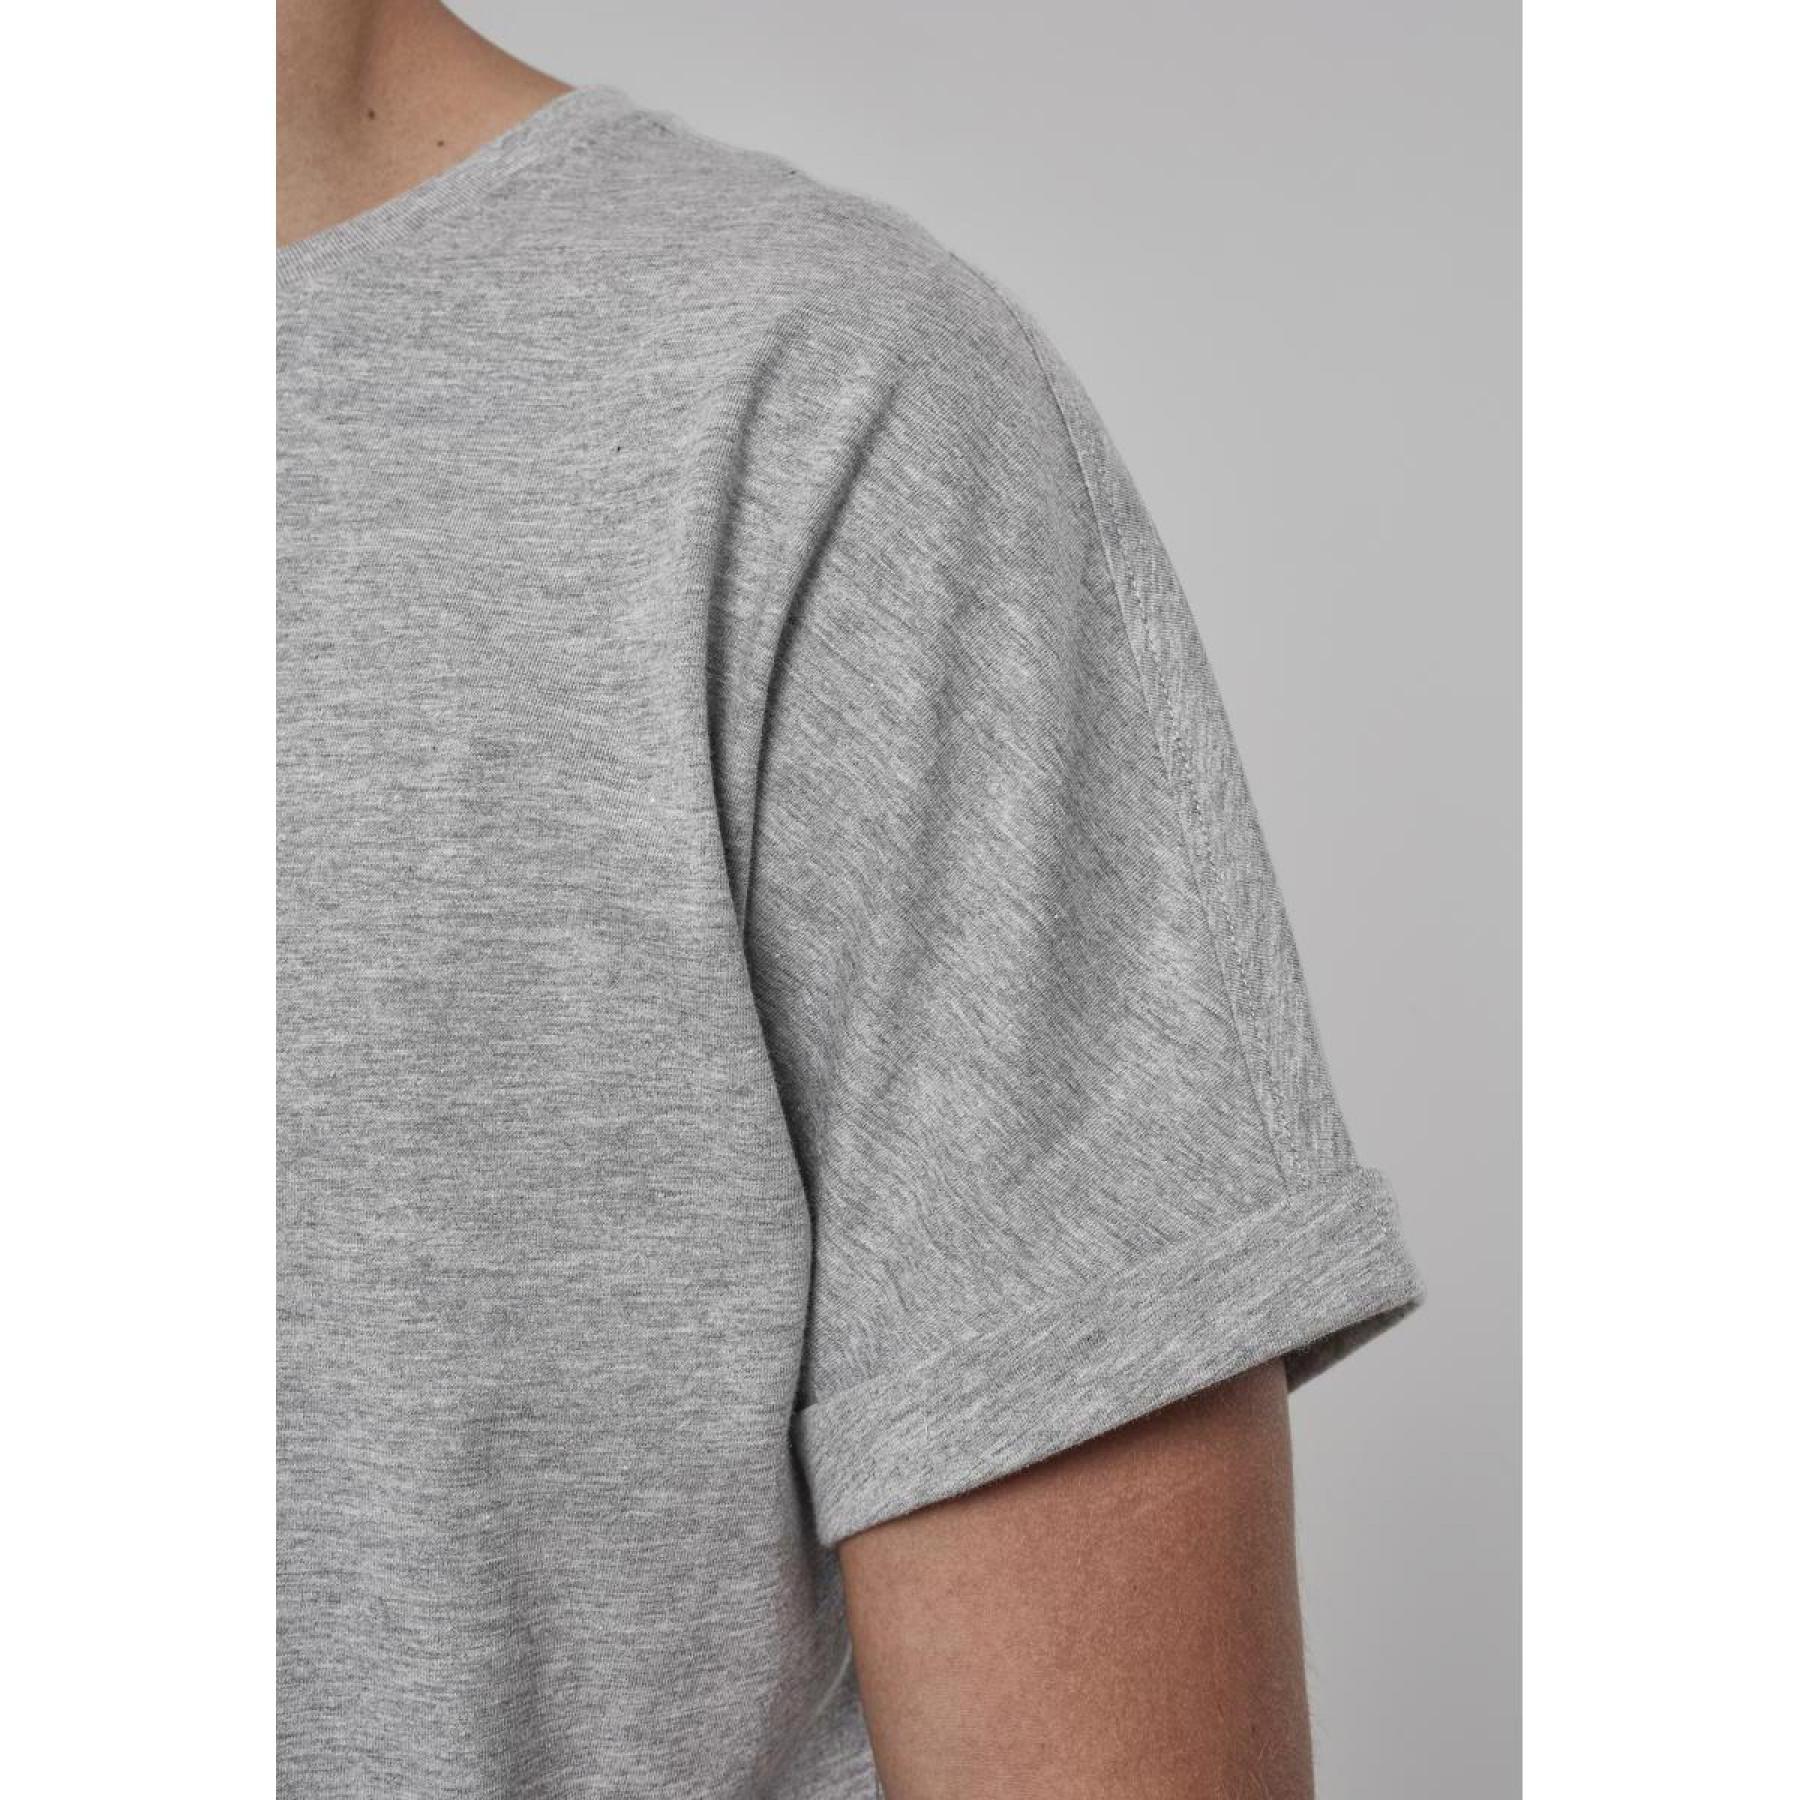 T-shirt Urban Classic long shaped